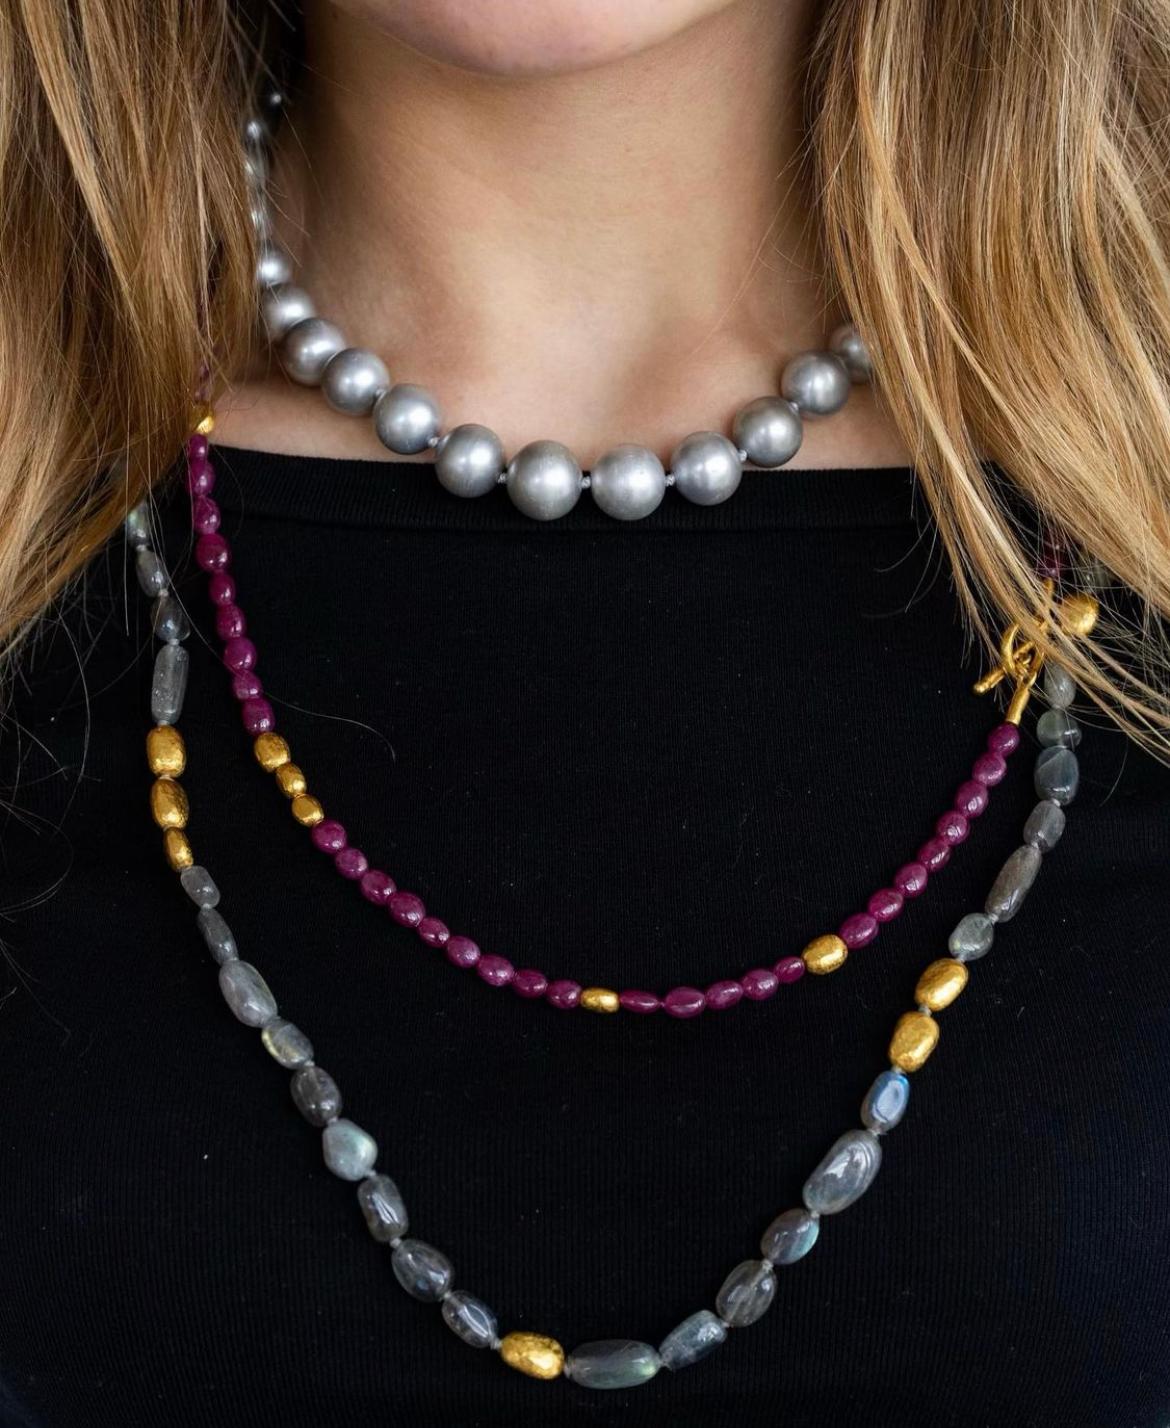 Long collier de rubis et de perles 24k unique en son genre.  Les perles en or sont forgées à la main et ont une texture martelée.  Les rubis sont tous ronds cabachon et sont complètement lisses dans une forme ovale.  Le collier est une pièce